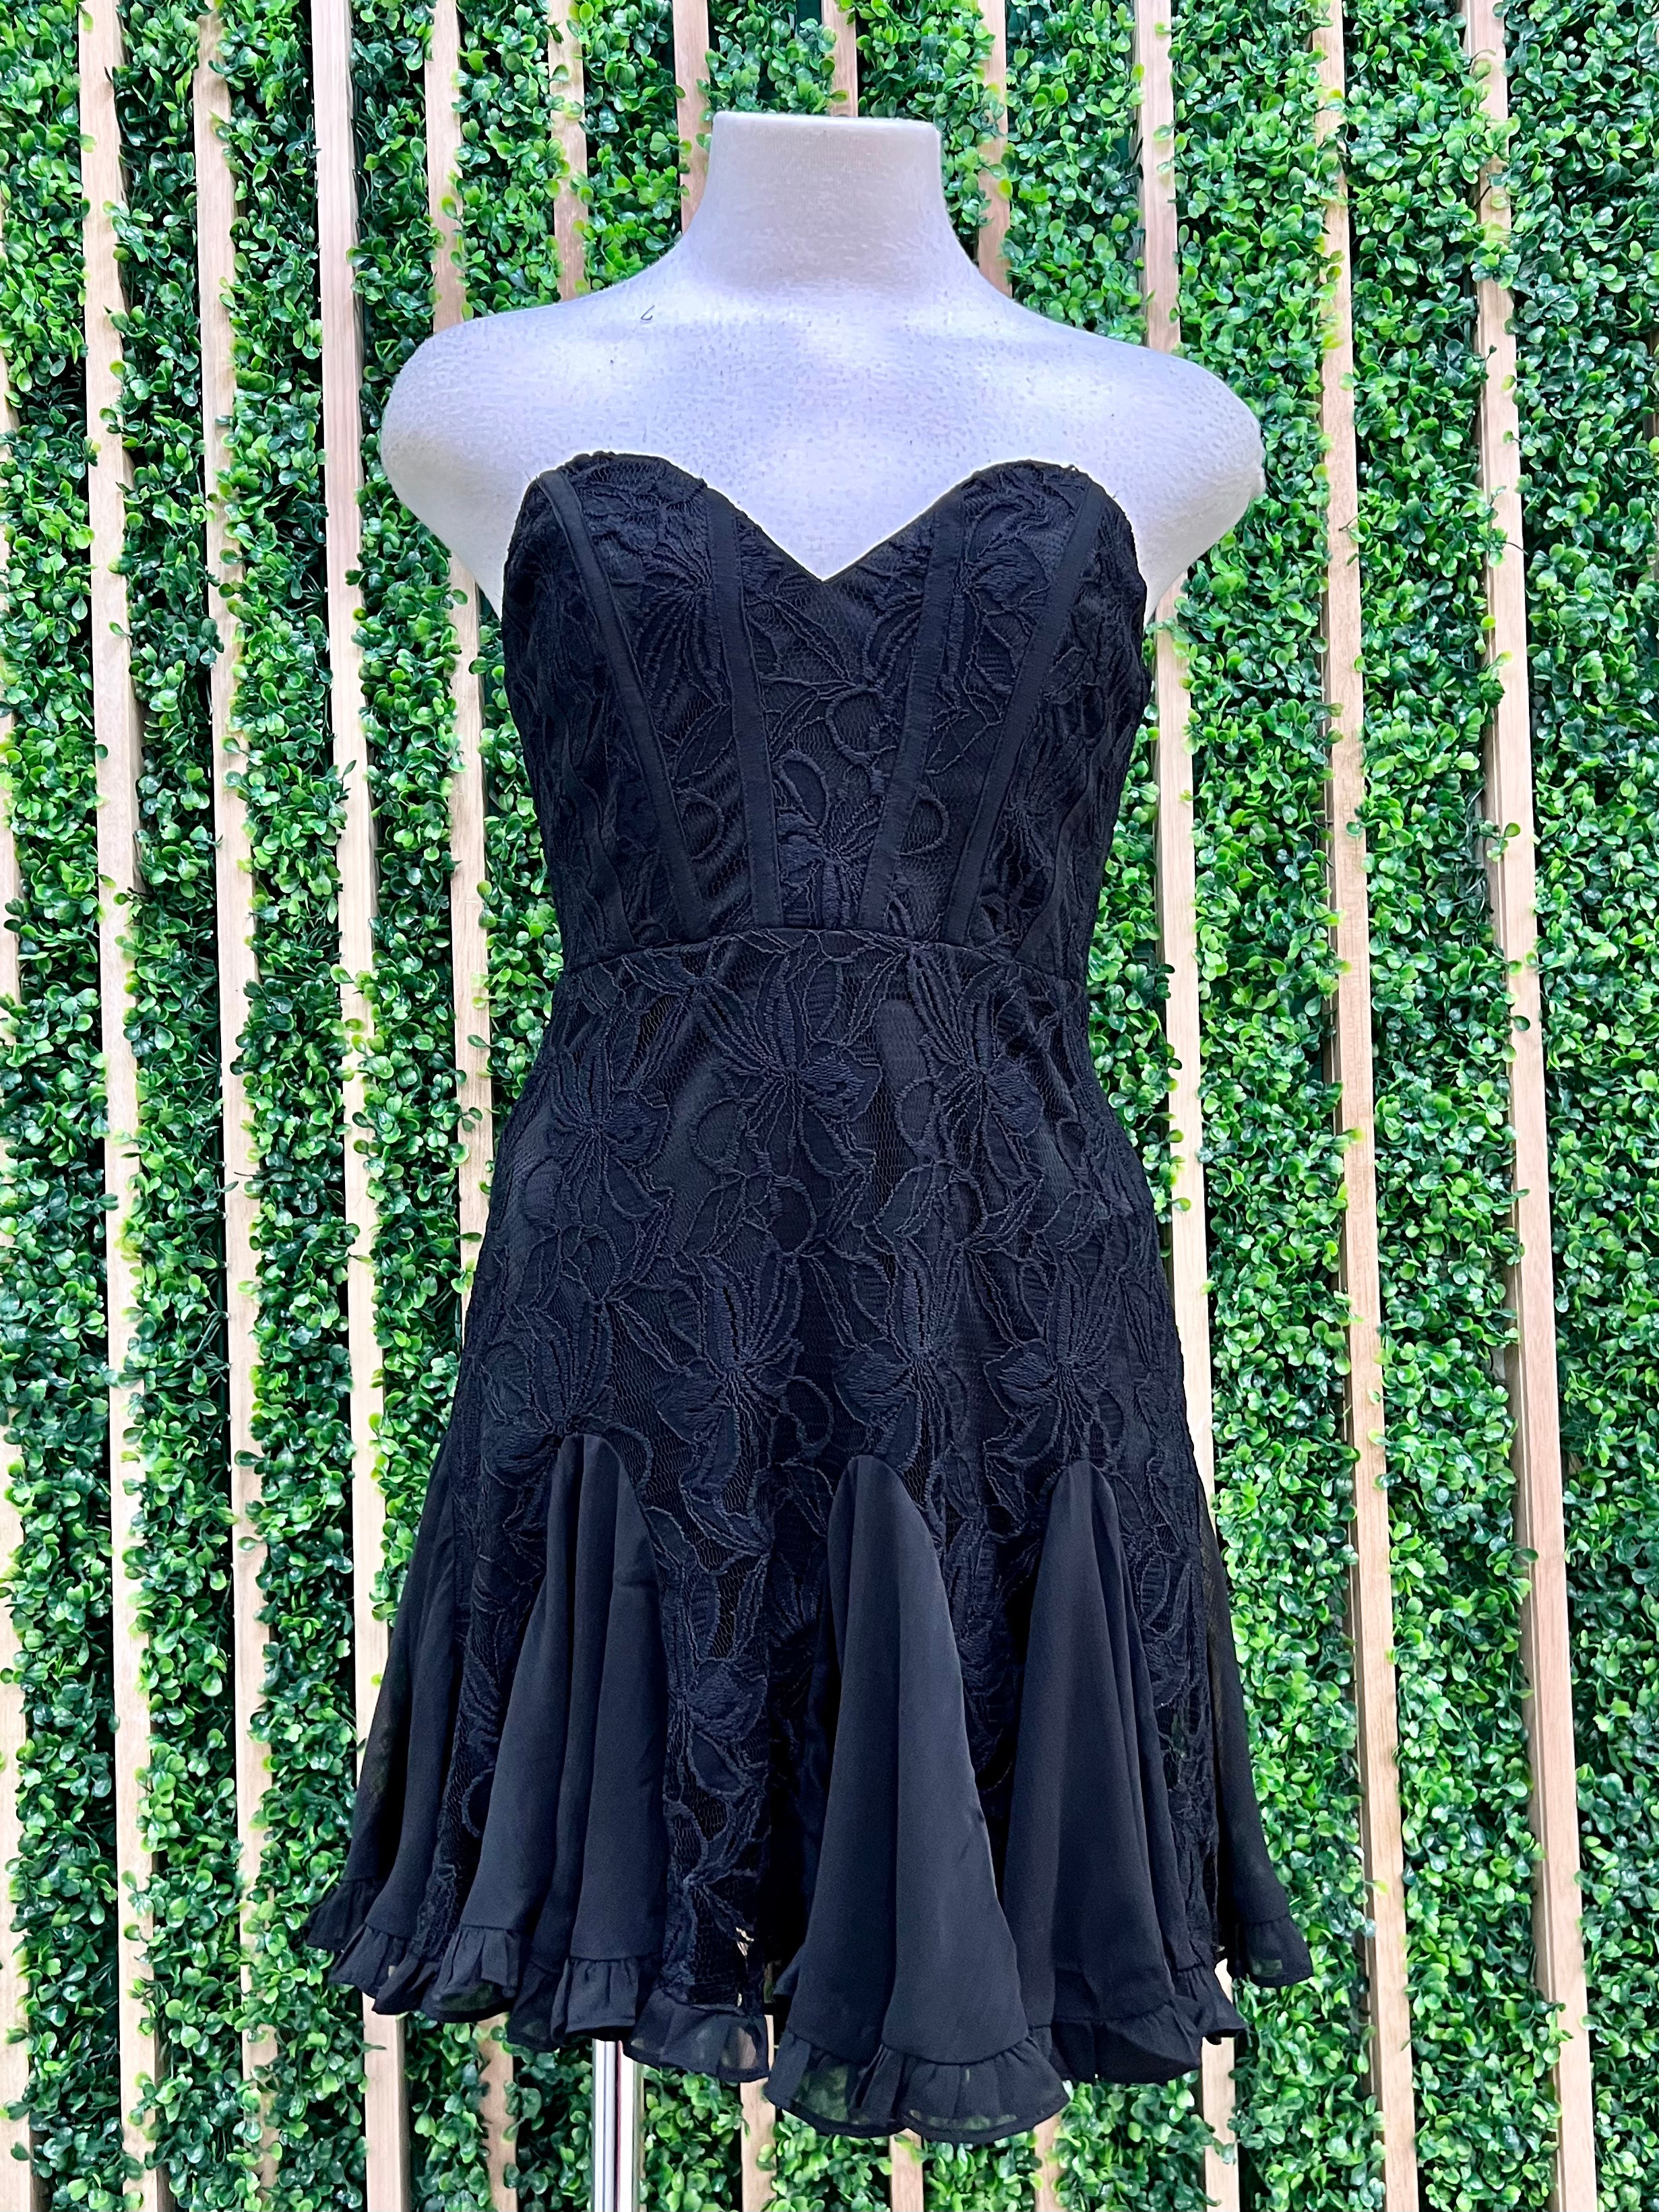 Black Floral Lace Sweetheart Strapless Dress – Ah Là Laà Lifestyle Boutique